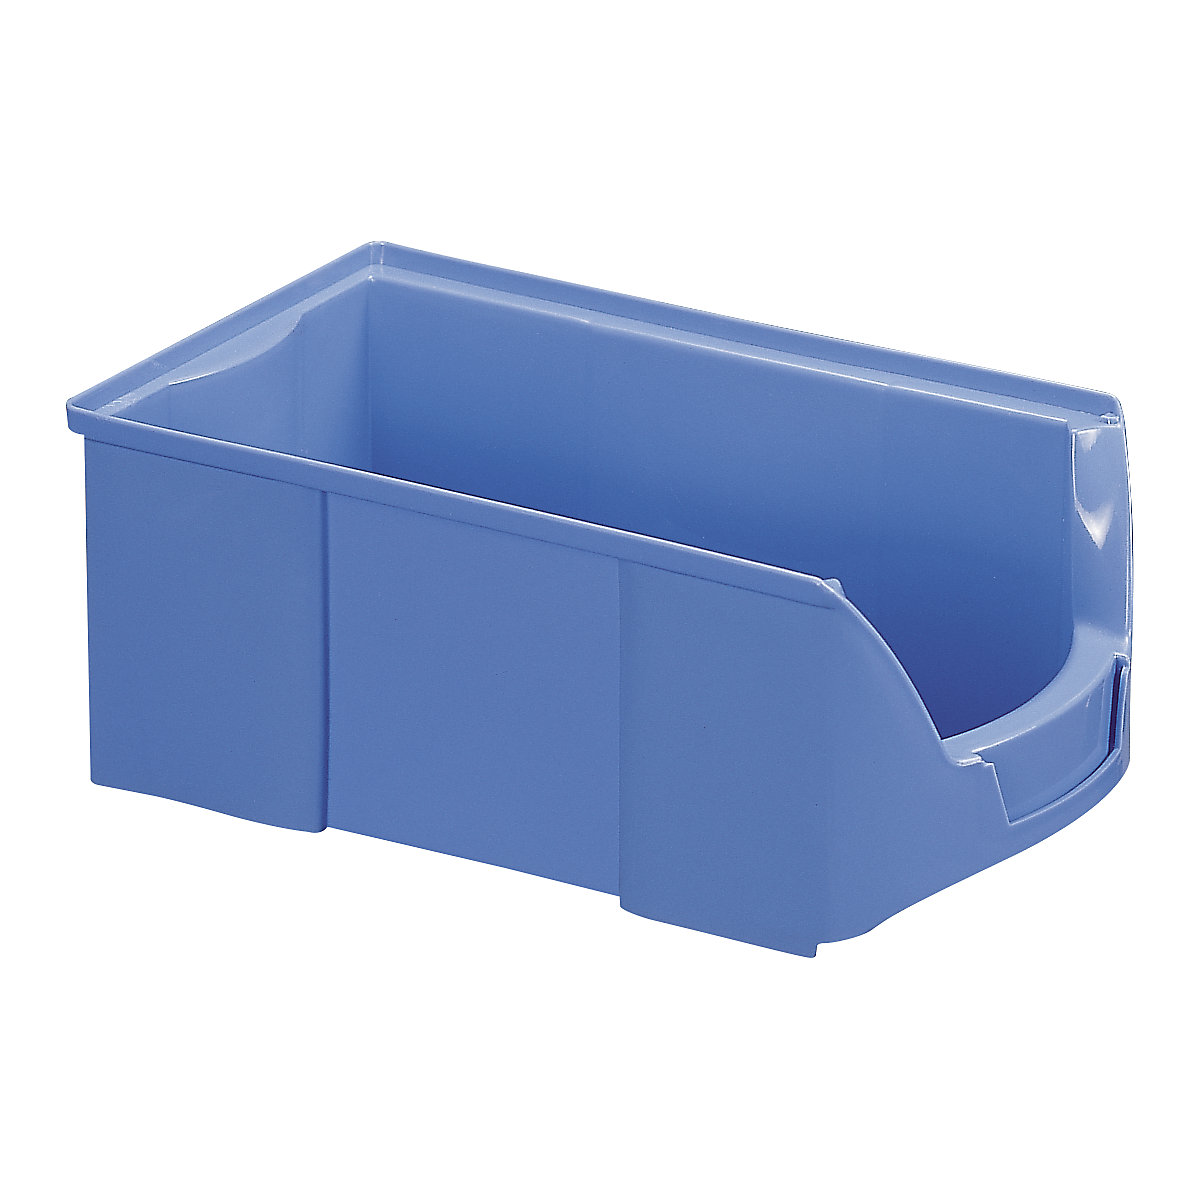 FUTURA-Sichtlagerkasten aus Polyethylen, LxBxH 510 x 310 x 201 mm, VE 6 Stk, blau-15